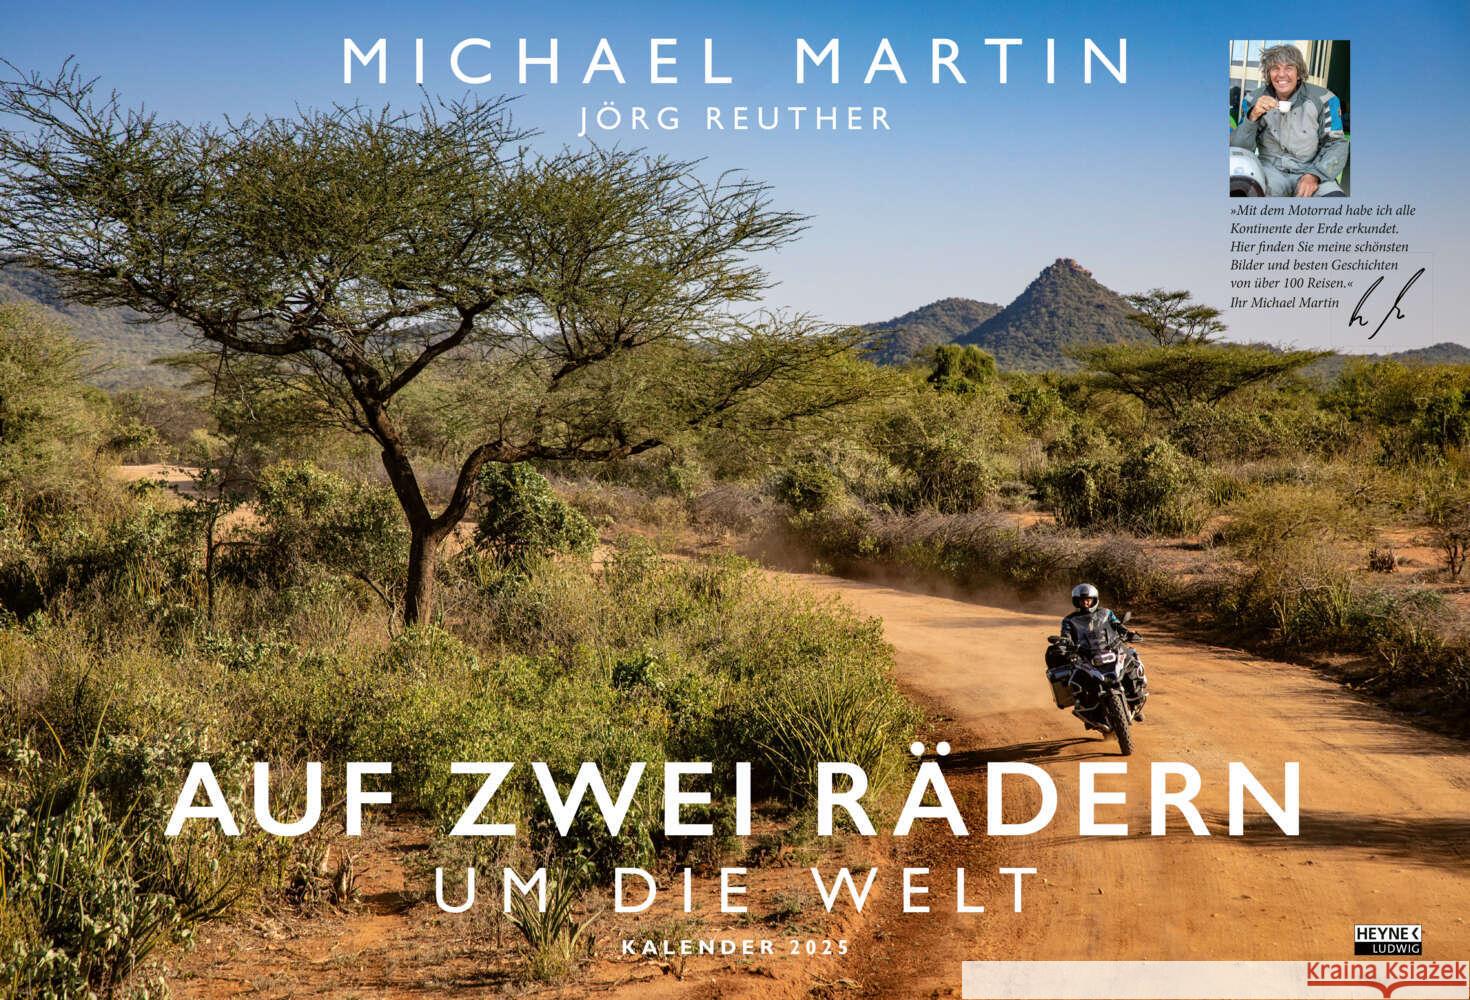 Auf zwei Rädern um die Welt - Der Motorrad-Reise-Kalender 2025 Martin, Michael 9783453239487